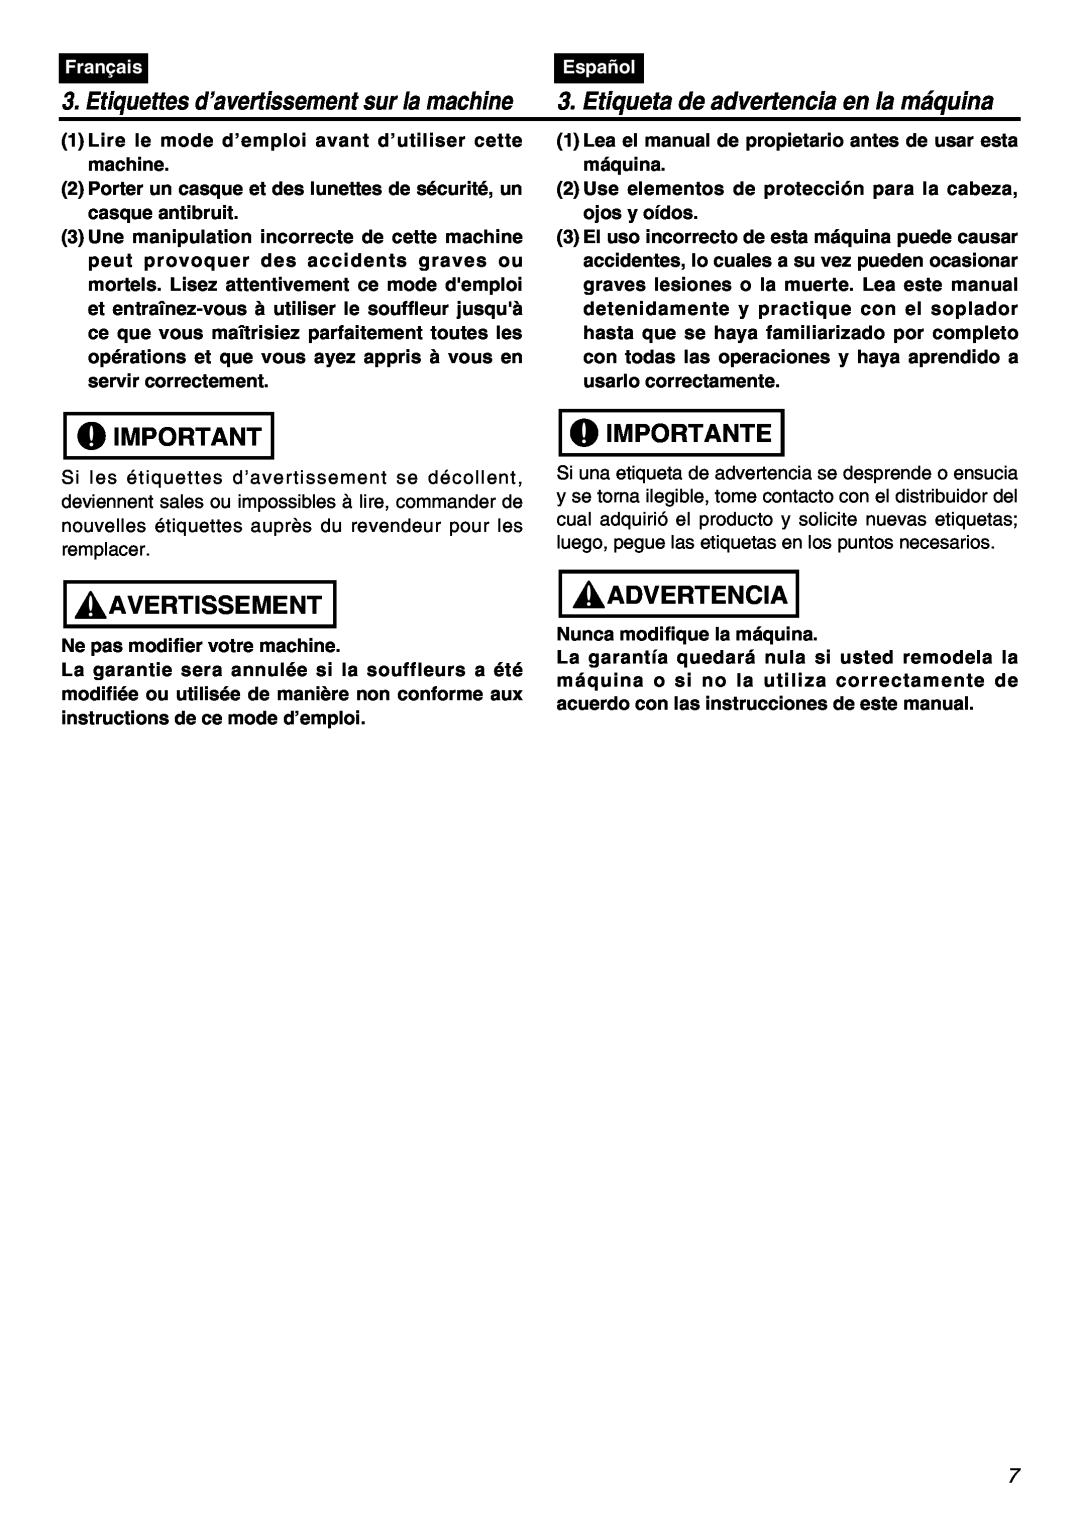 RedMax EBZ7001 manual Avertissement, Importante, Advertencia, Etiquettes d’avertissement sur la machine, Français, Español 